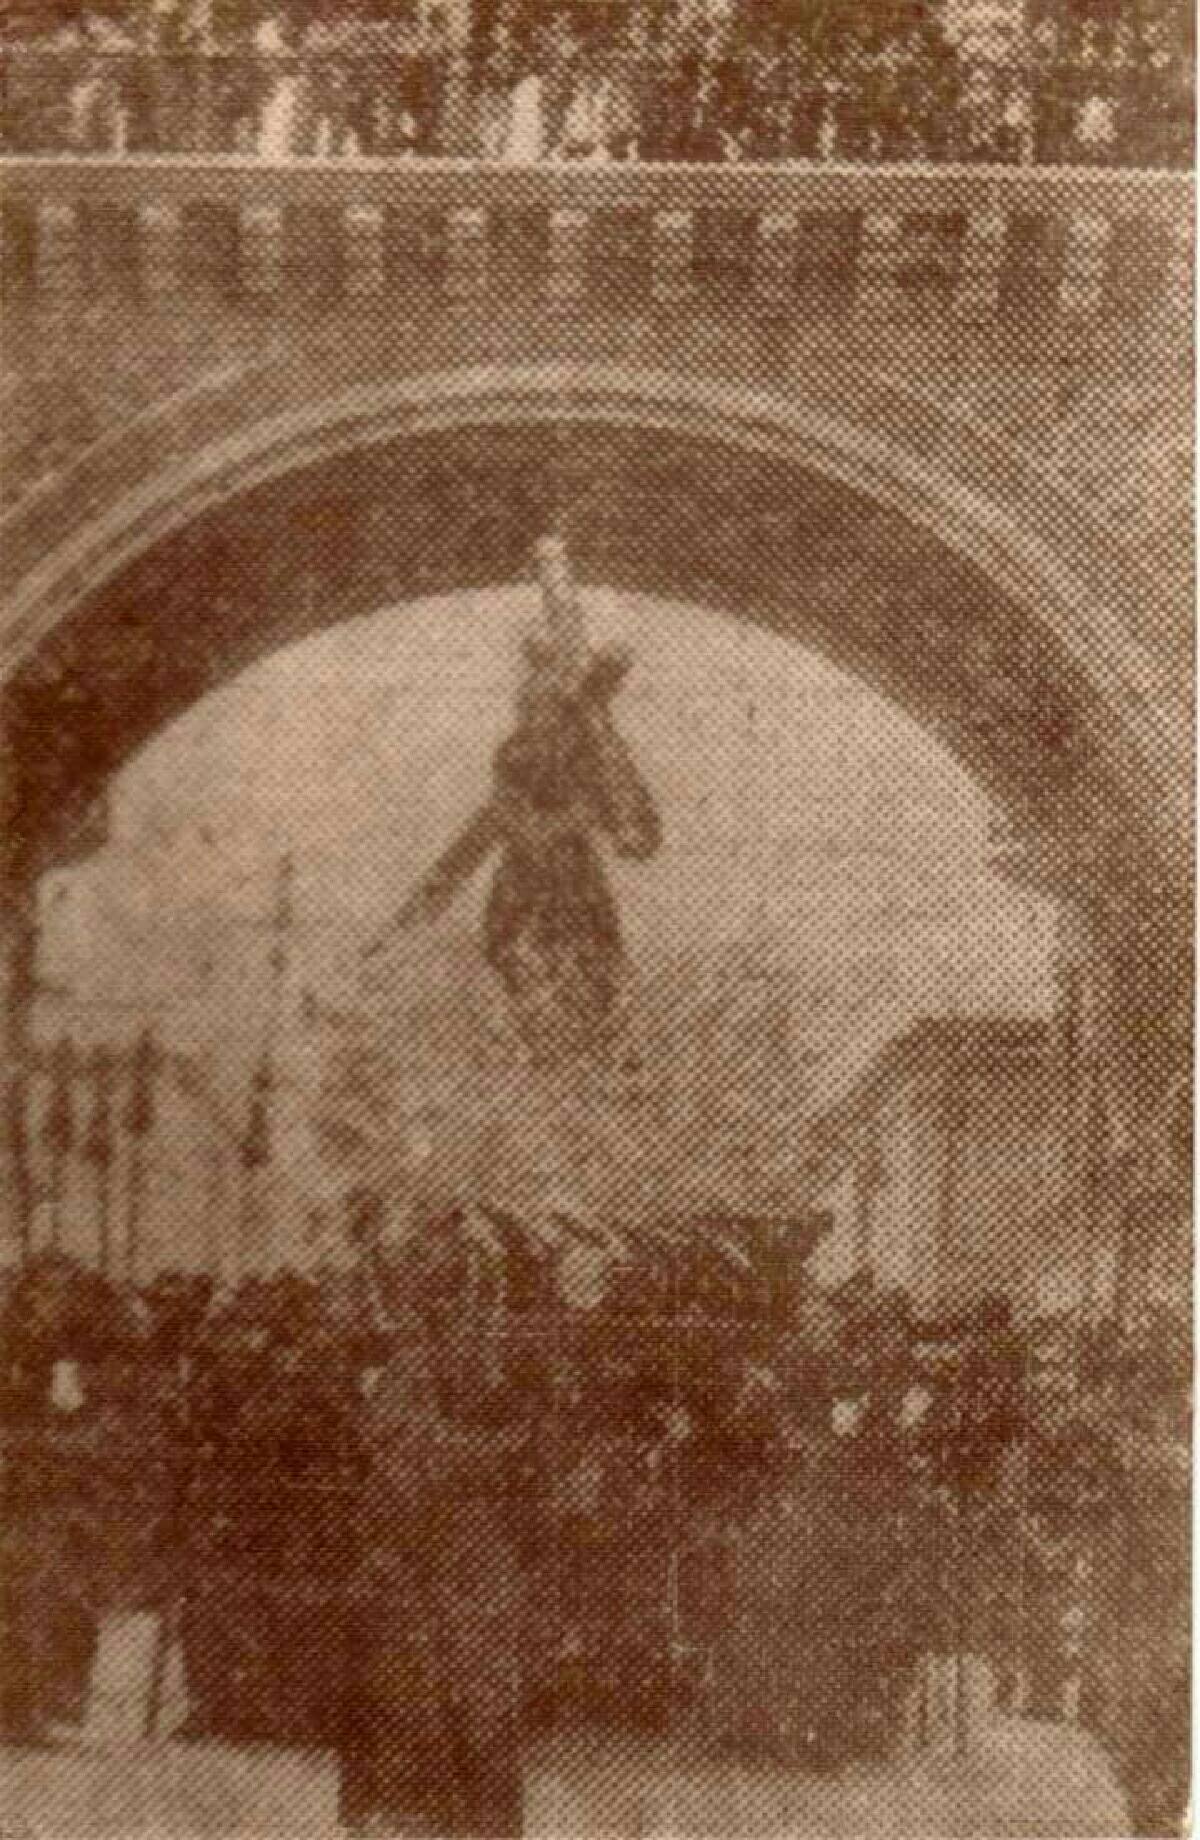 Jesús de la Merced haciendo su paso por el Arco de Correos en 1942 en su Procesión de los 225 años de Consagración. (Foto: Jesús en Guatemala)